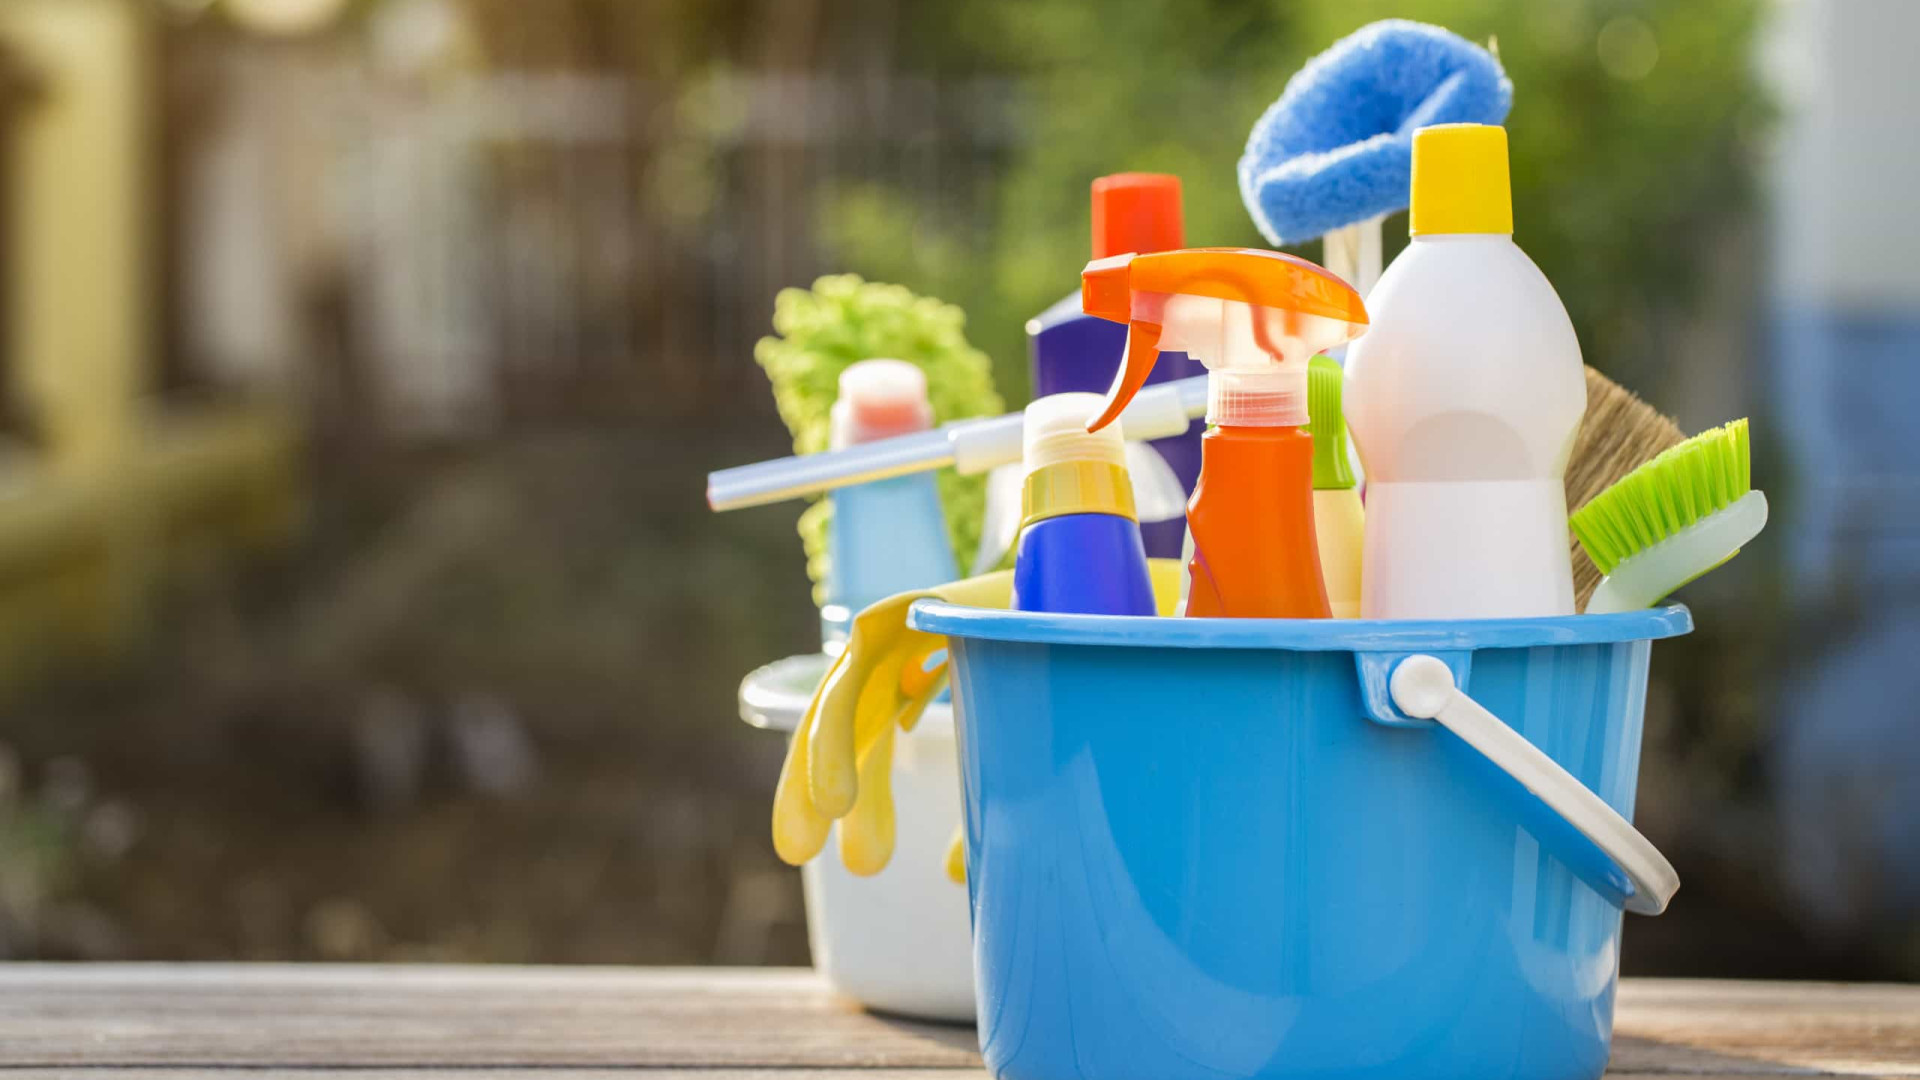 Anvisa alerta sobre aumento de intoxicação por produtos de limpeza